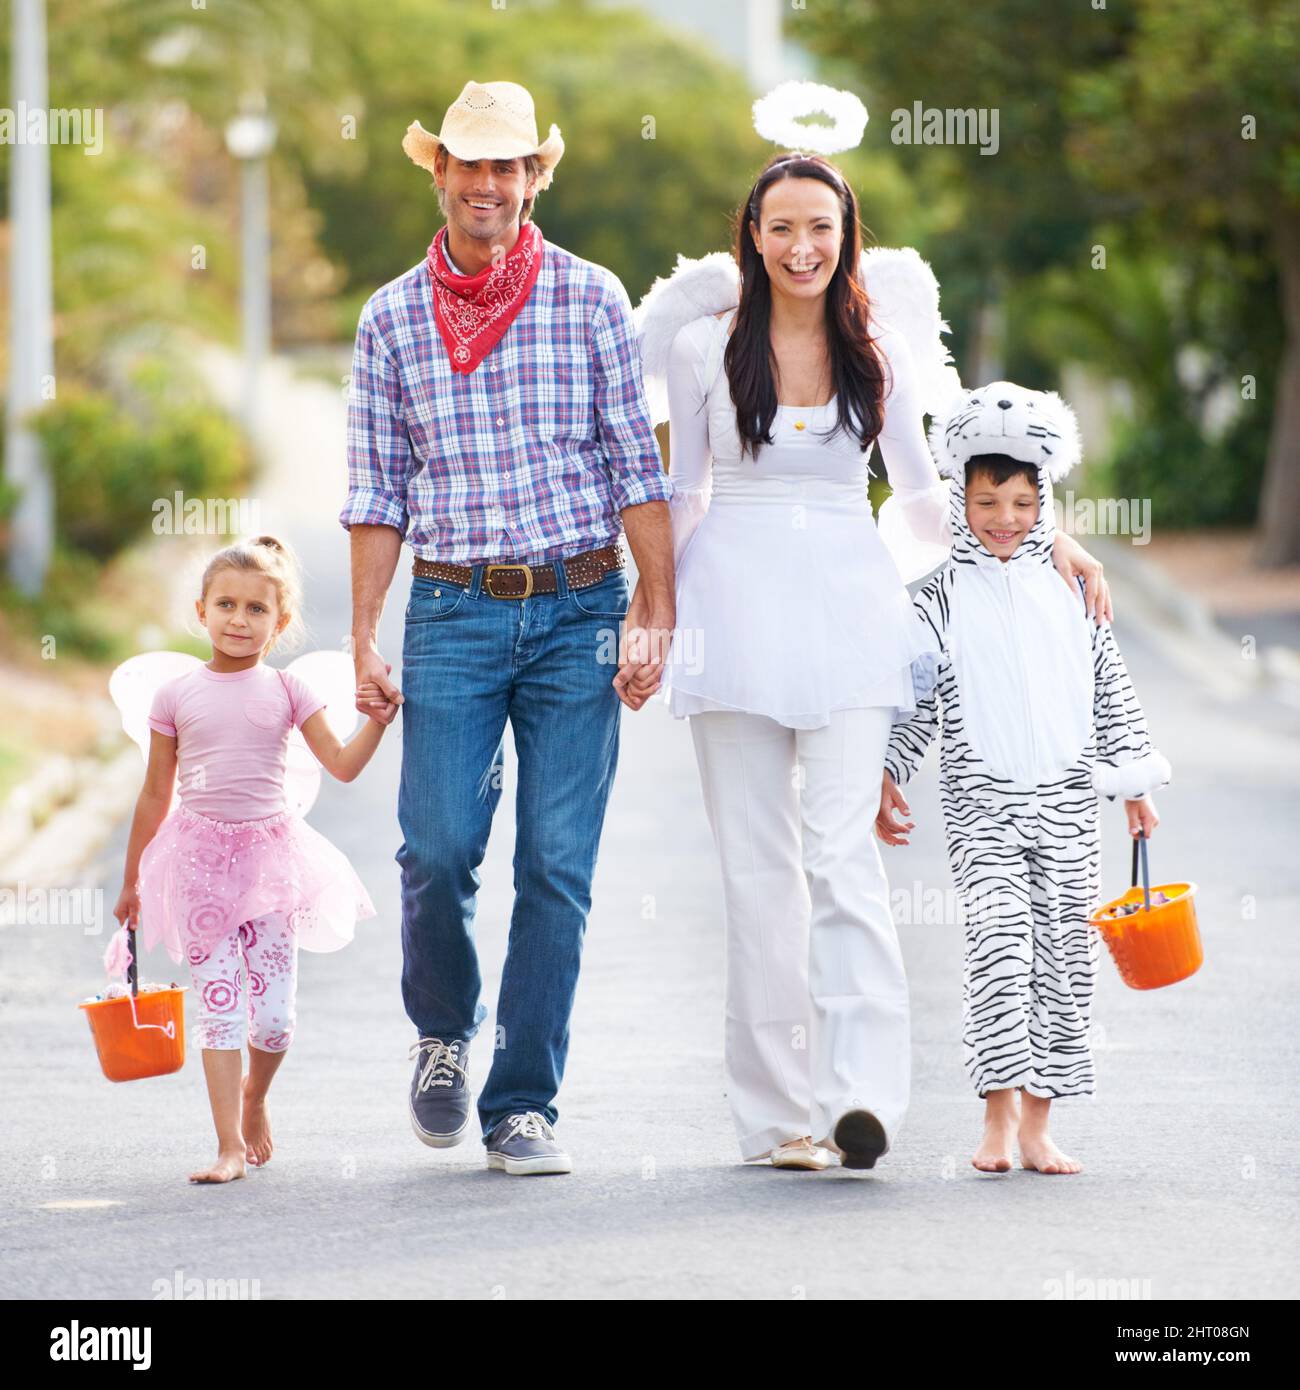 Diese Kollektion von Outfits ist unschlagbar. In voller Länge aufgenommen, wie eine Familie in ihren Halloween-Kostümen die Straße entlang läuft. Stockfoto